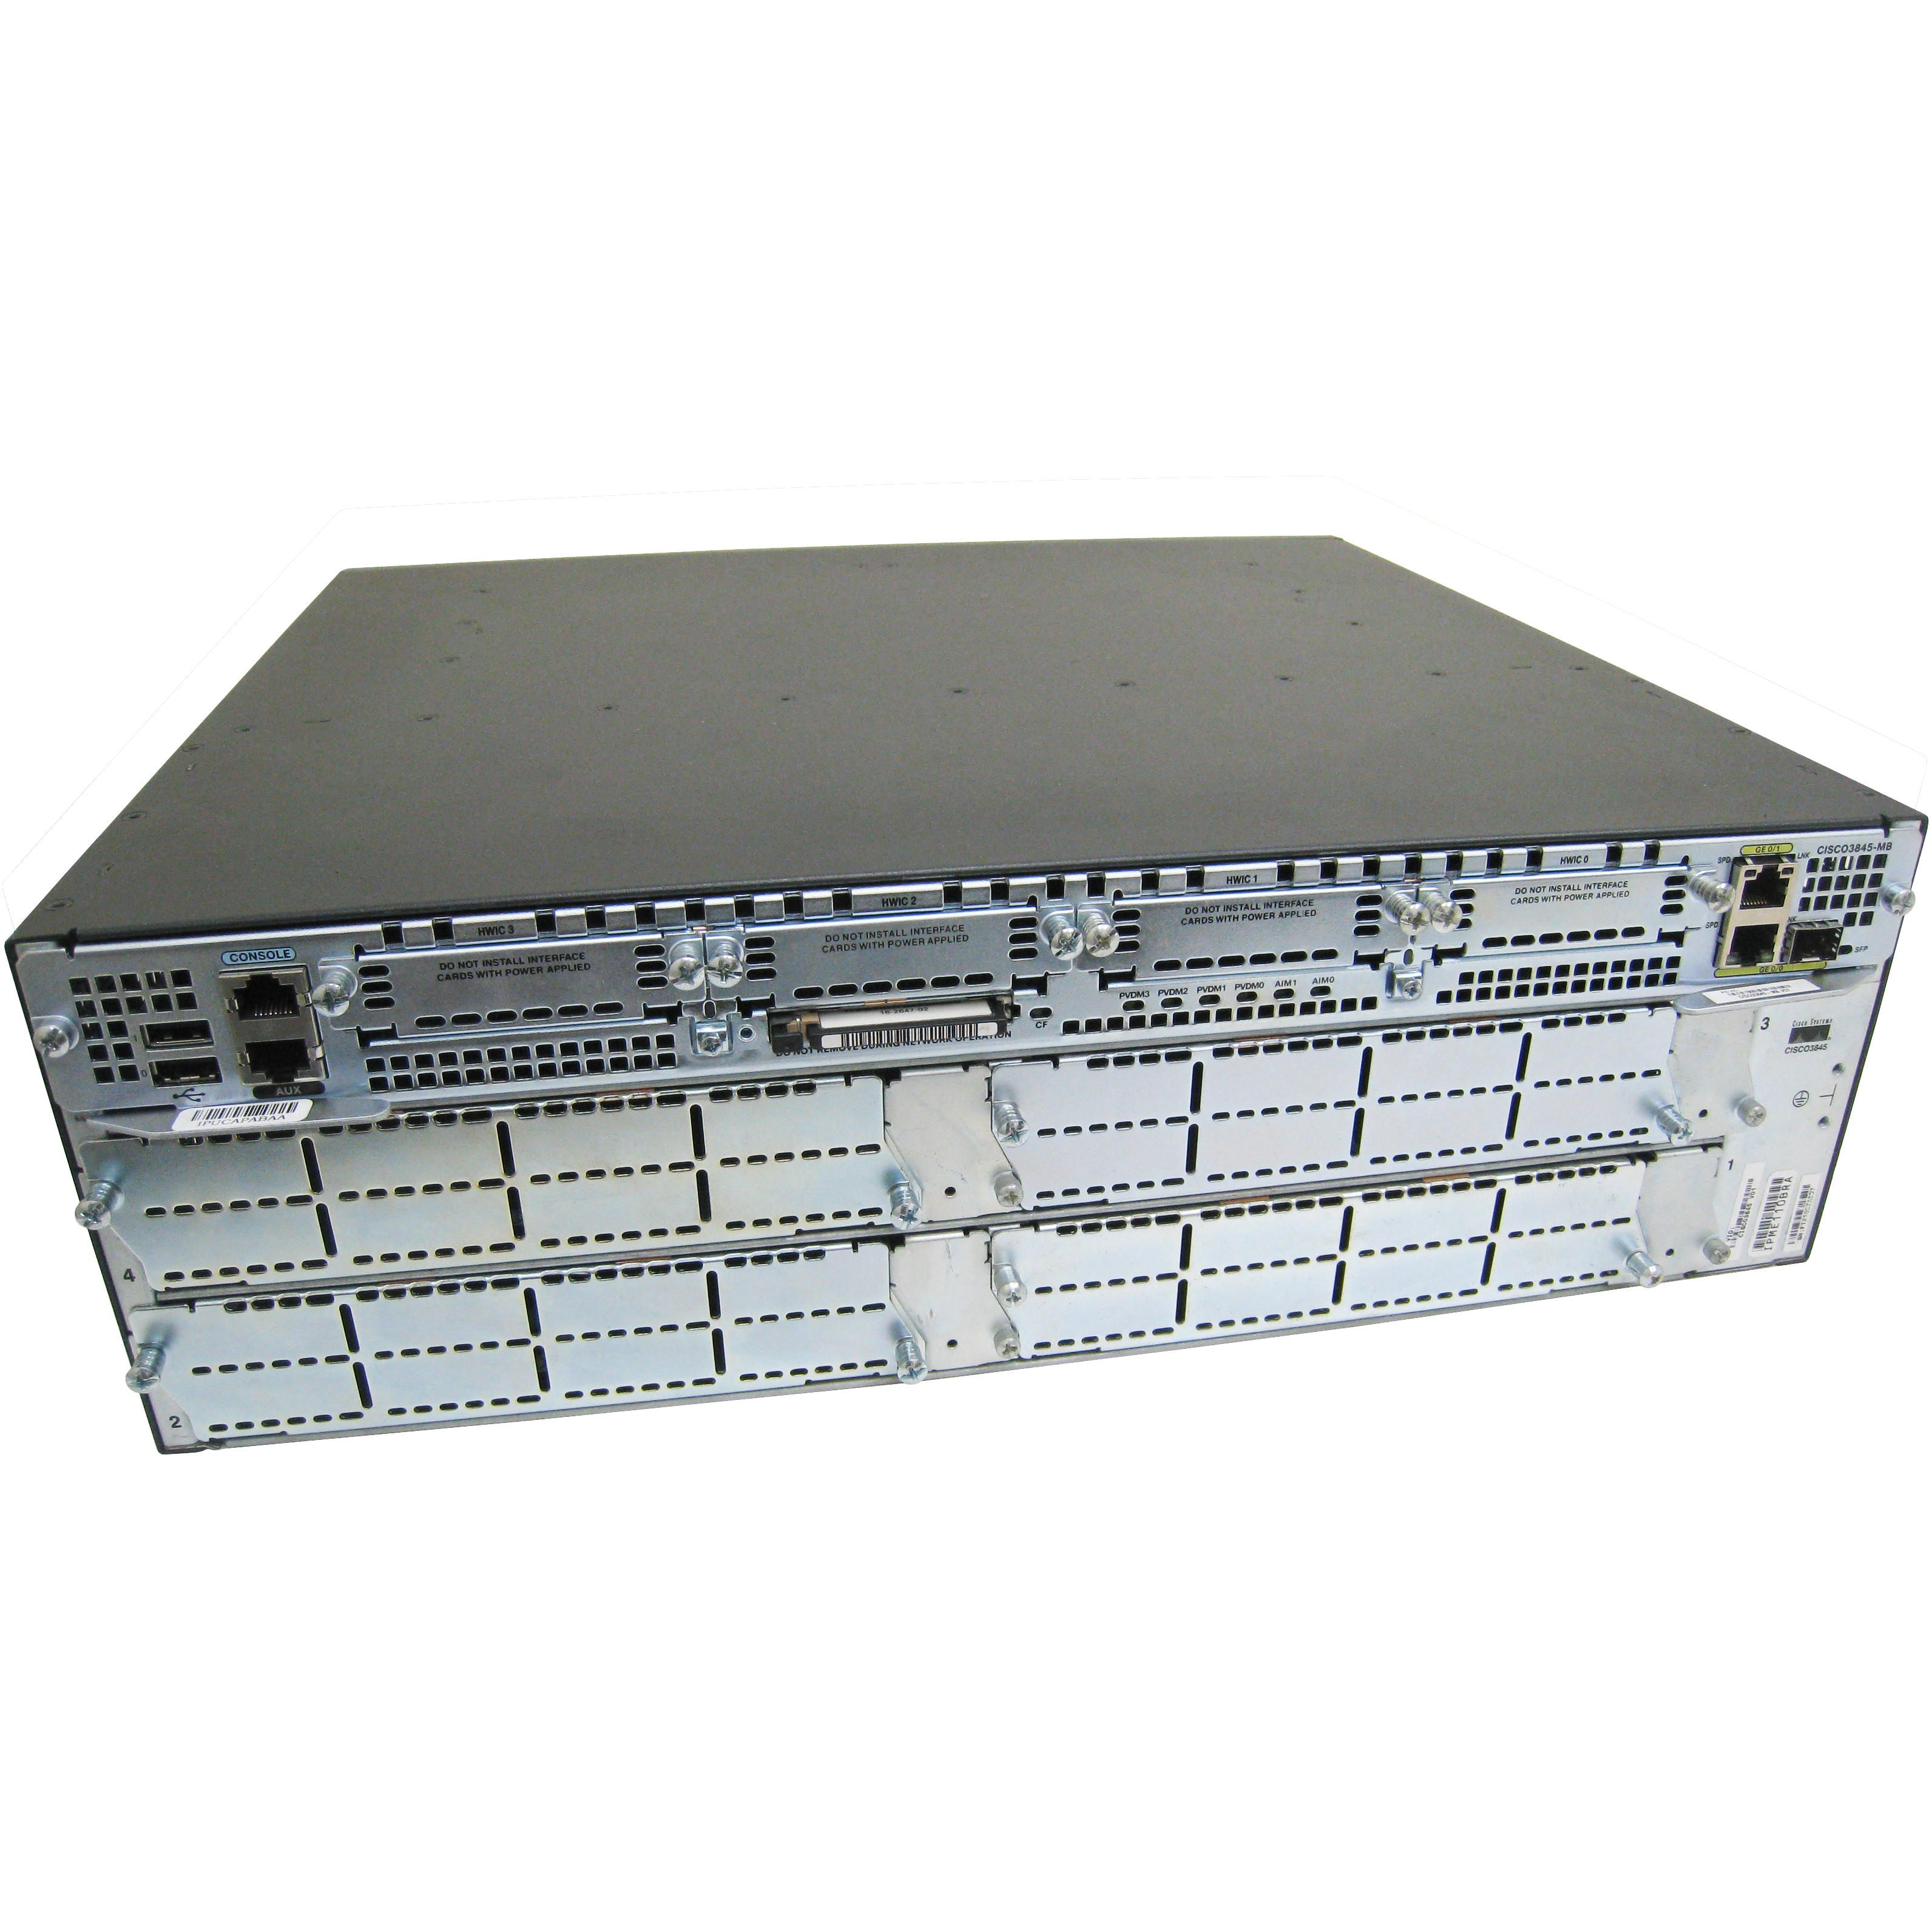 Cisco CISCO3845-VMSS/K9